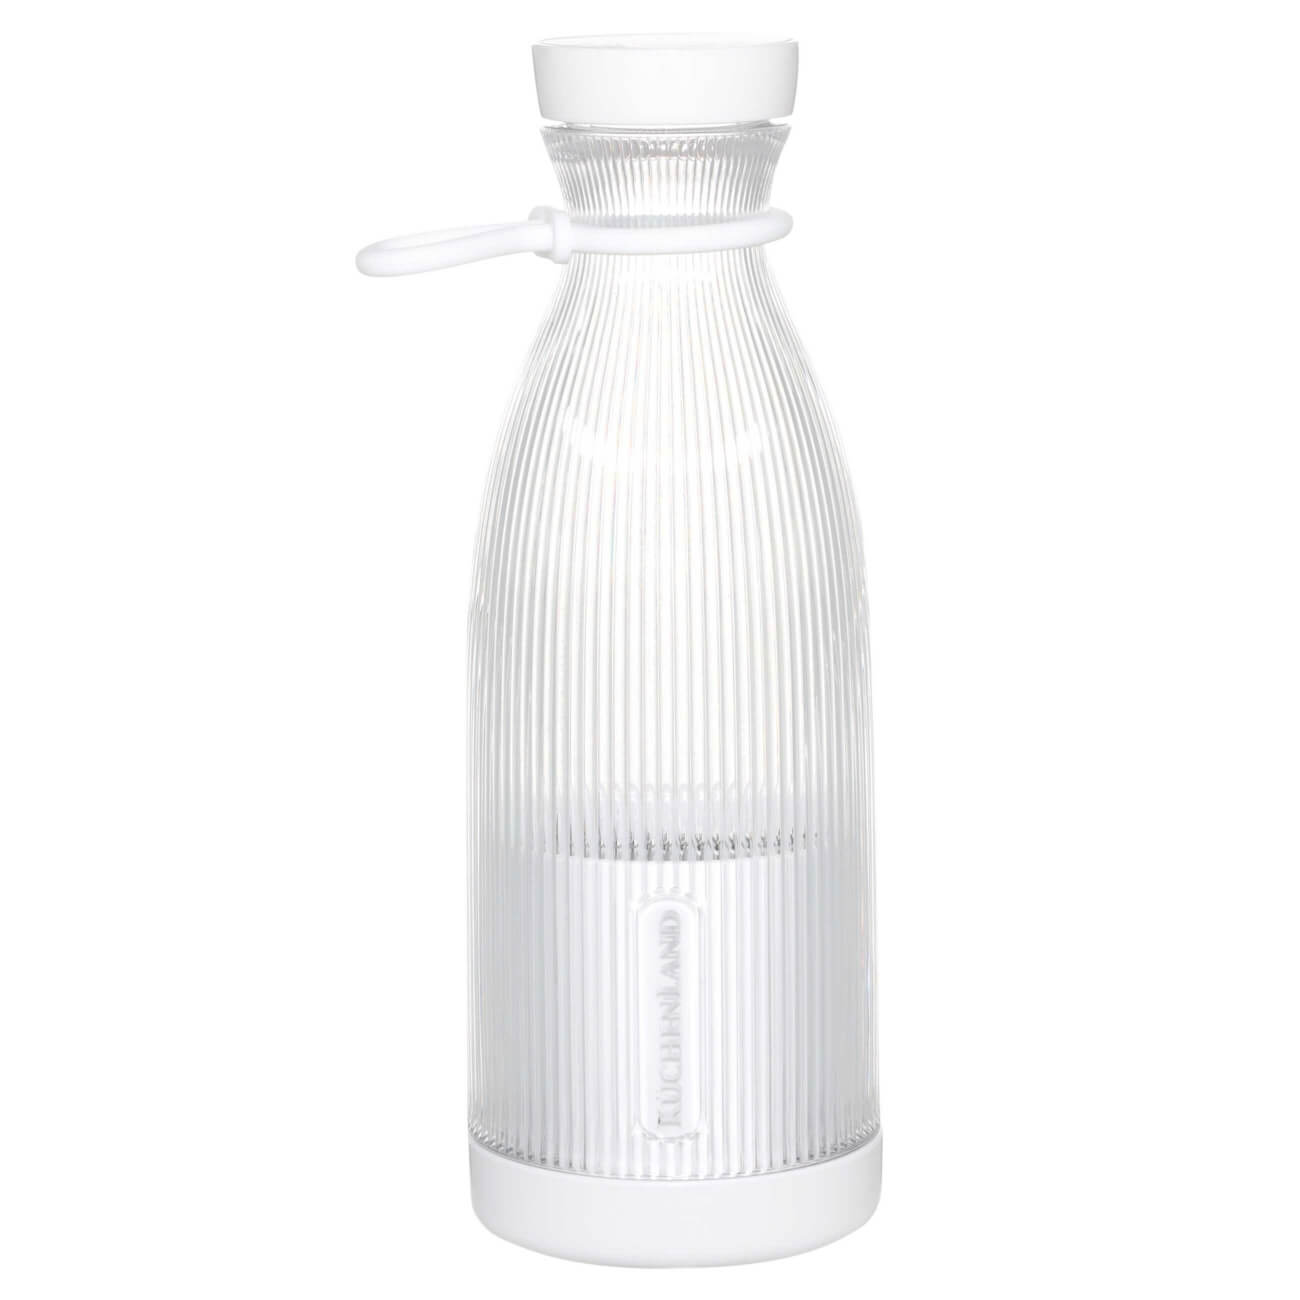 Блендер персональный, 300 мл, портативный, пластик, белый, Бутылка, Ribby пуговицы пластик на полуножке